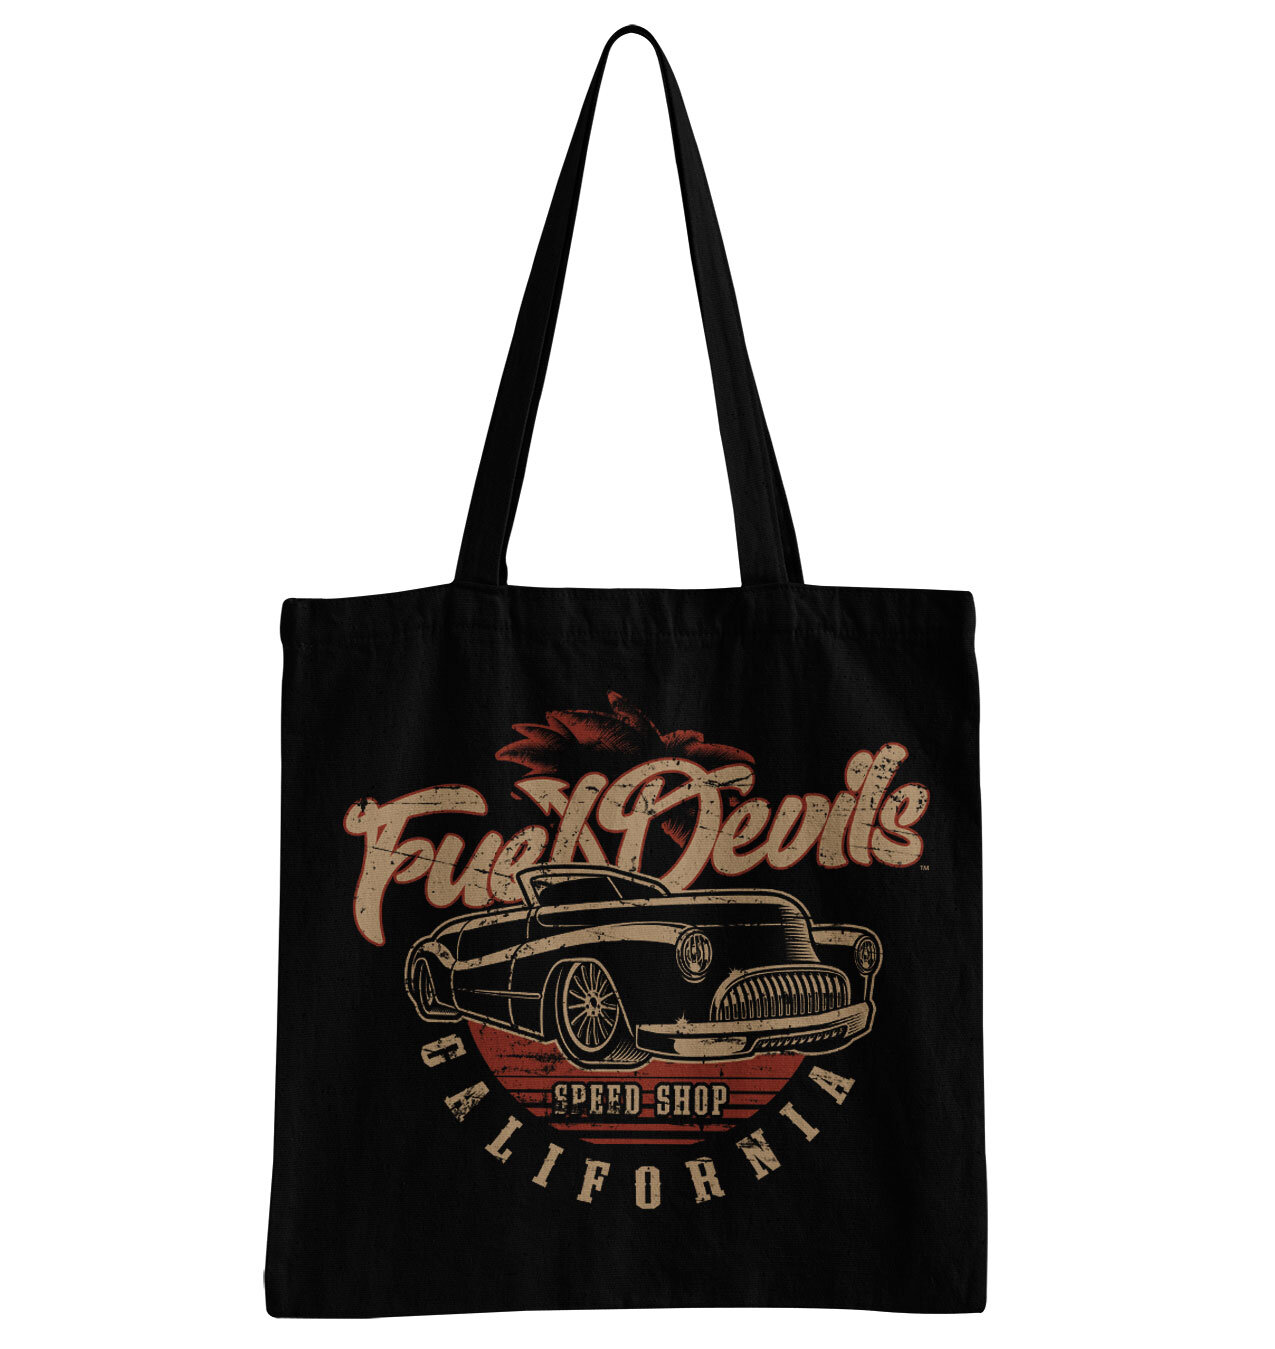 Fuel Devils Cali Cab Tote Bag